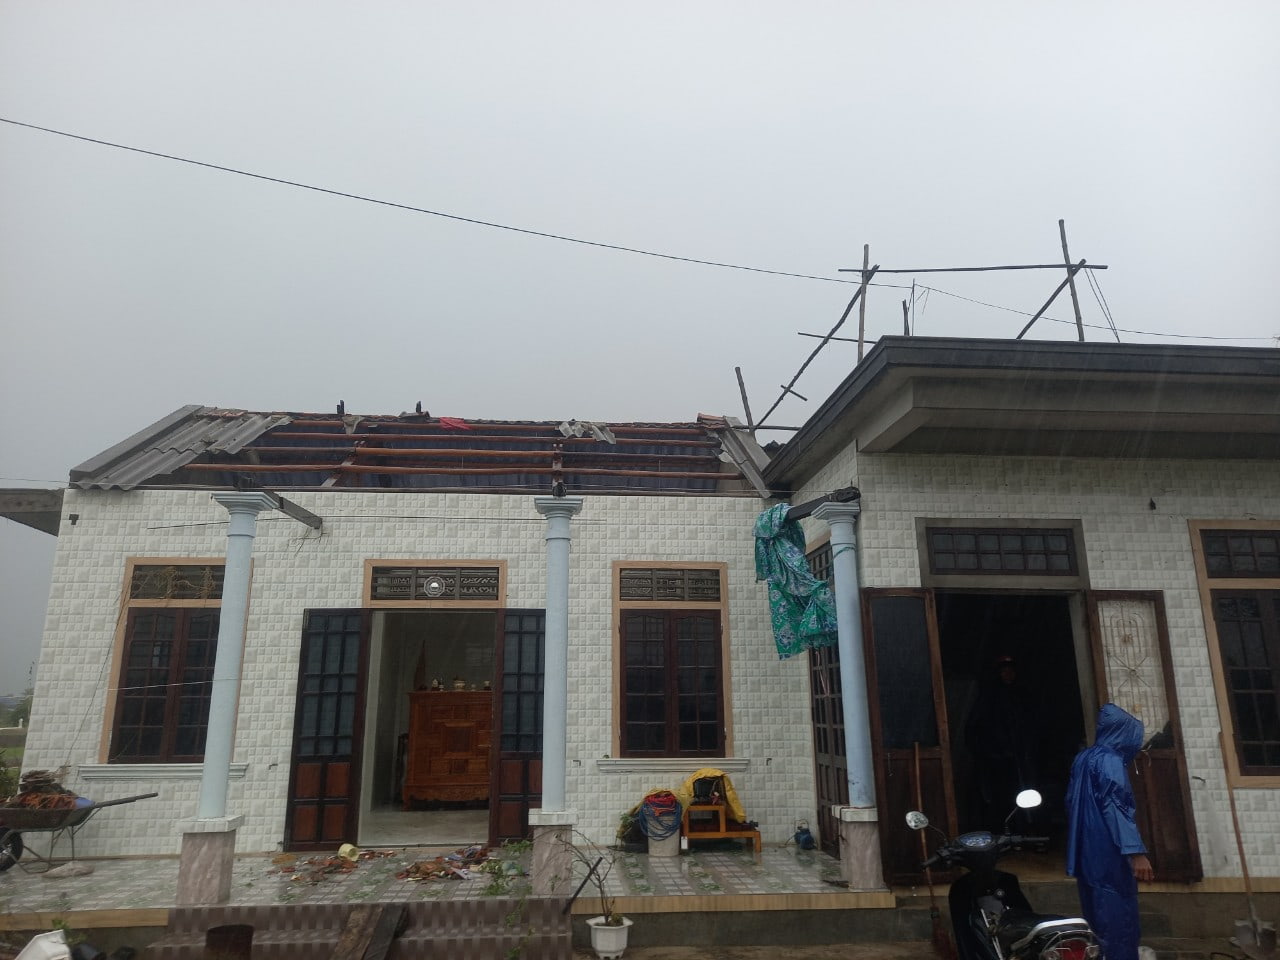 Ông Nguyễn Văn Khoa, Chủ tịch UBND xã Quảng Thành, huyện Quảng Điền cũng cho biết, trên địa bàn xã có 3 thôn bị ảnh hưởng do lốc xoáy, khiến khoảng 39 ngôi nhà bị tốc mái.